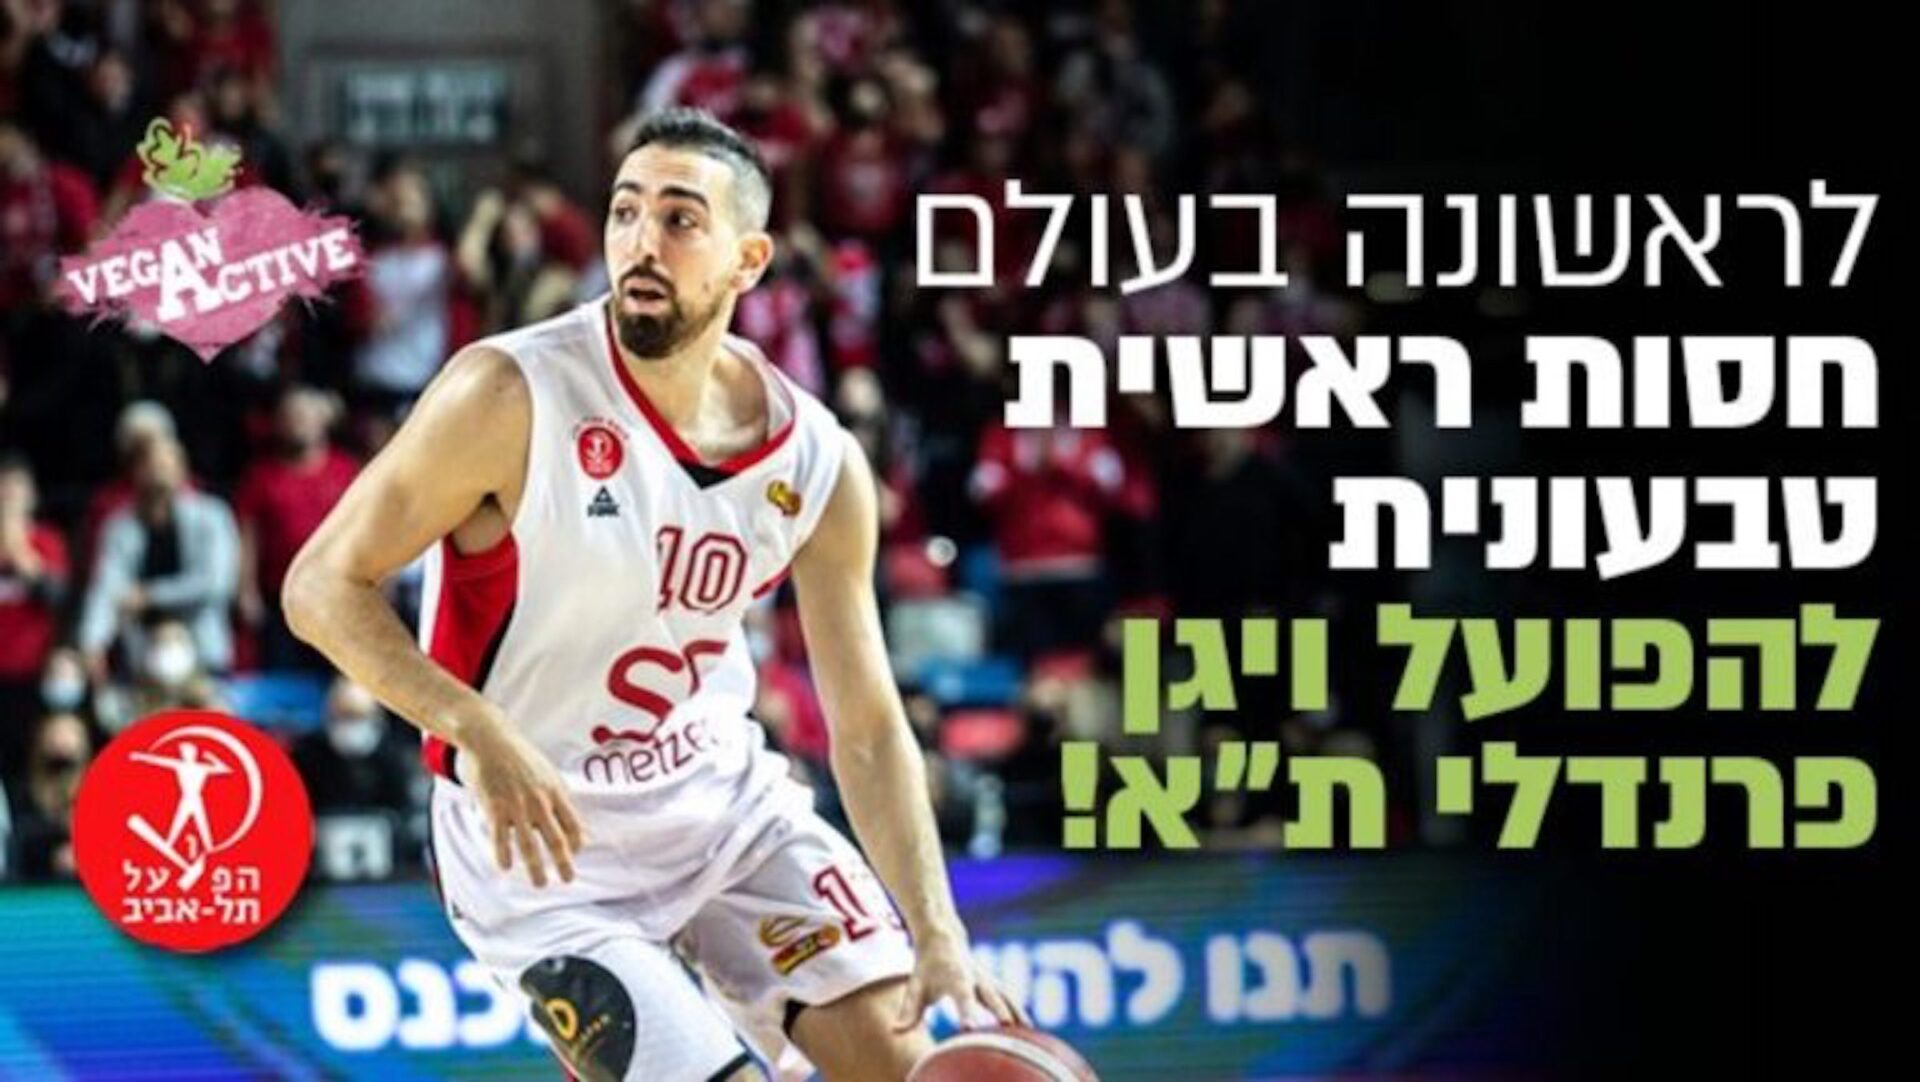 Hapoel Tel Aviv basketball team goes vegan